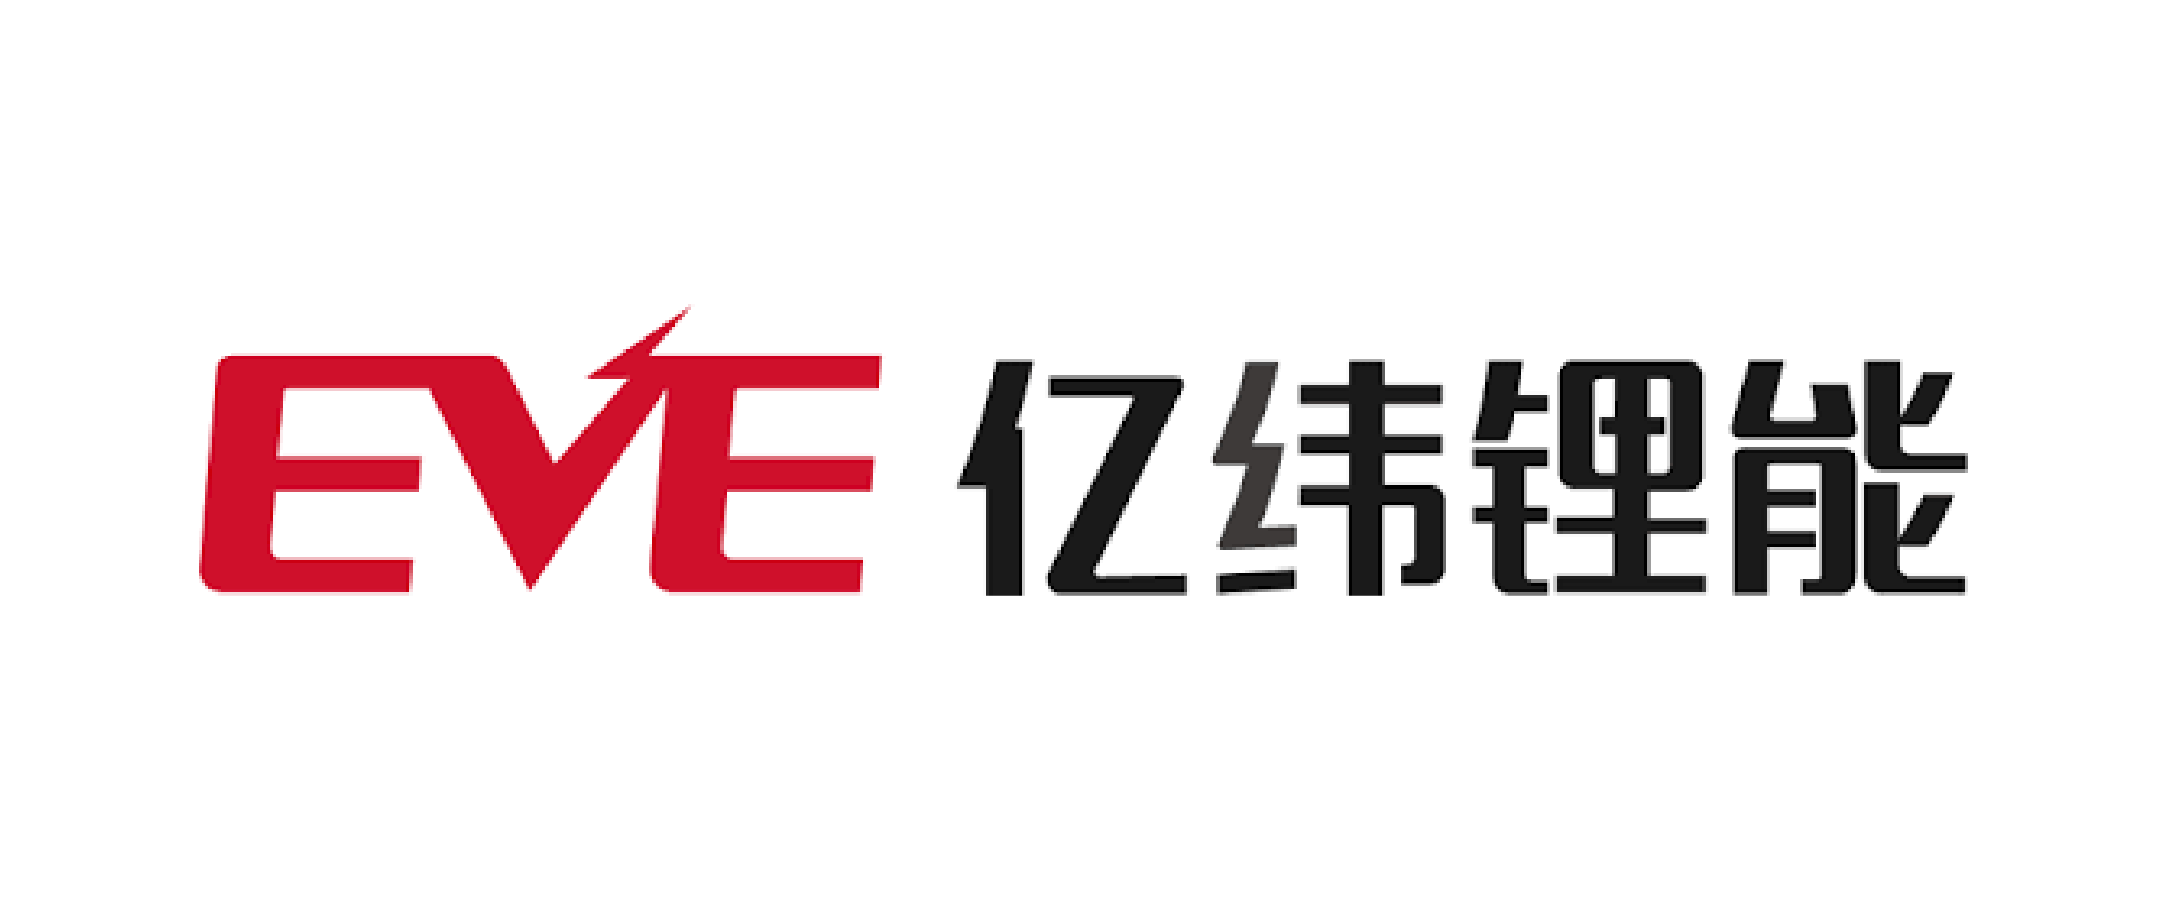 Ф. «Eve Energy co., Ltd» Label. Ф. «Eve Energy co., Ltd». Eve energy